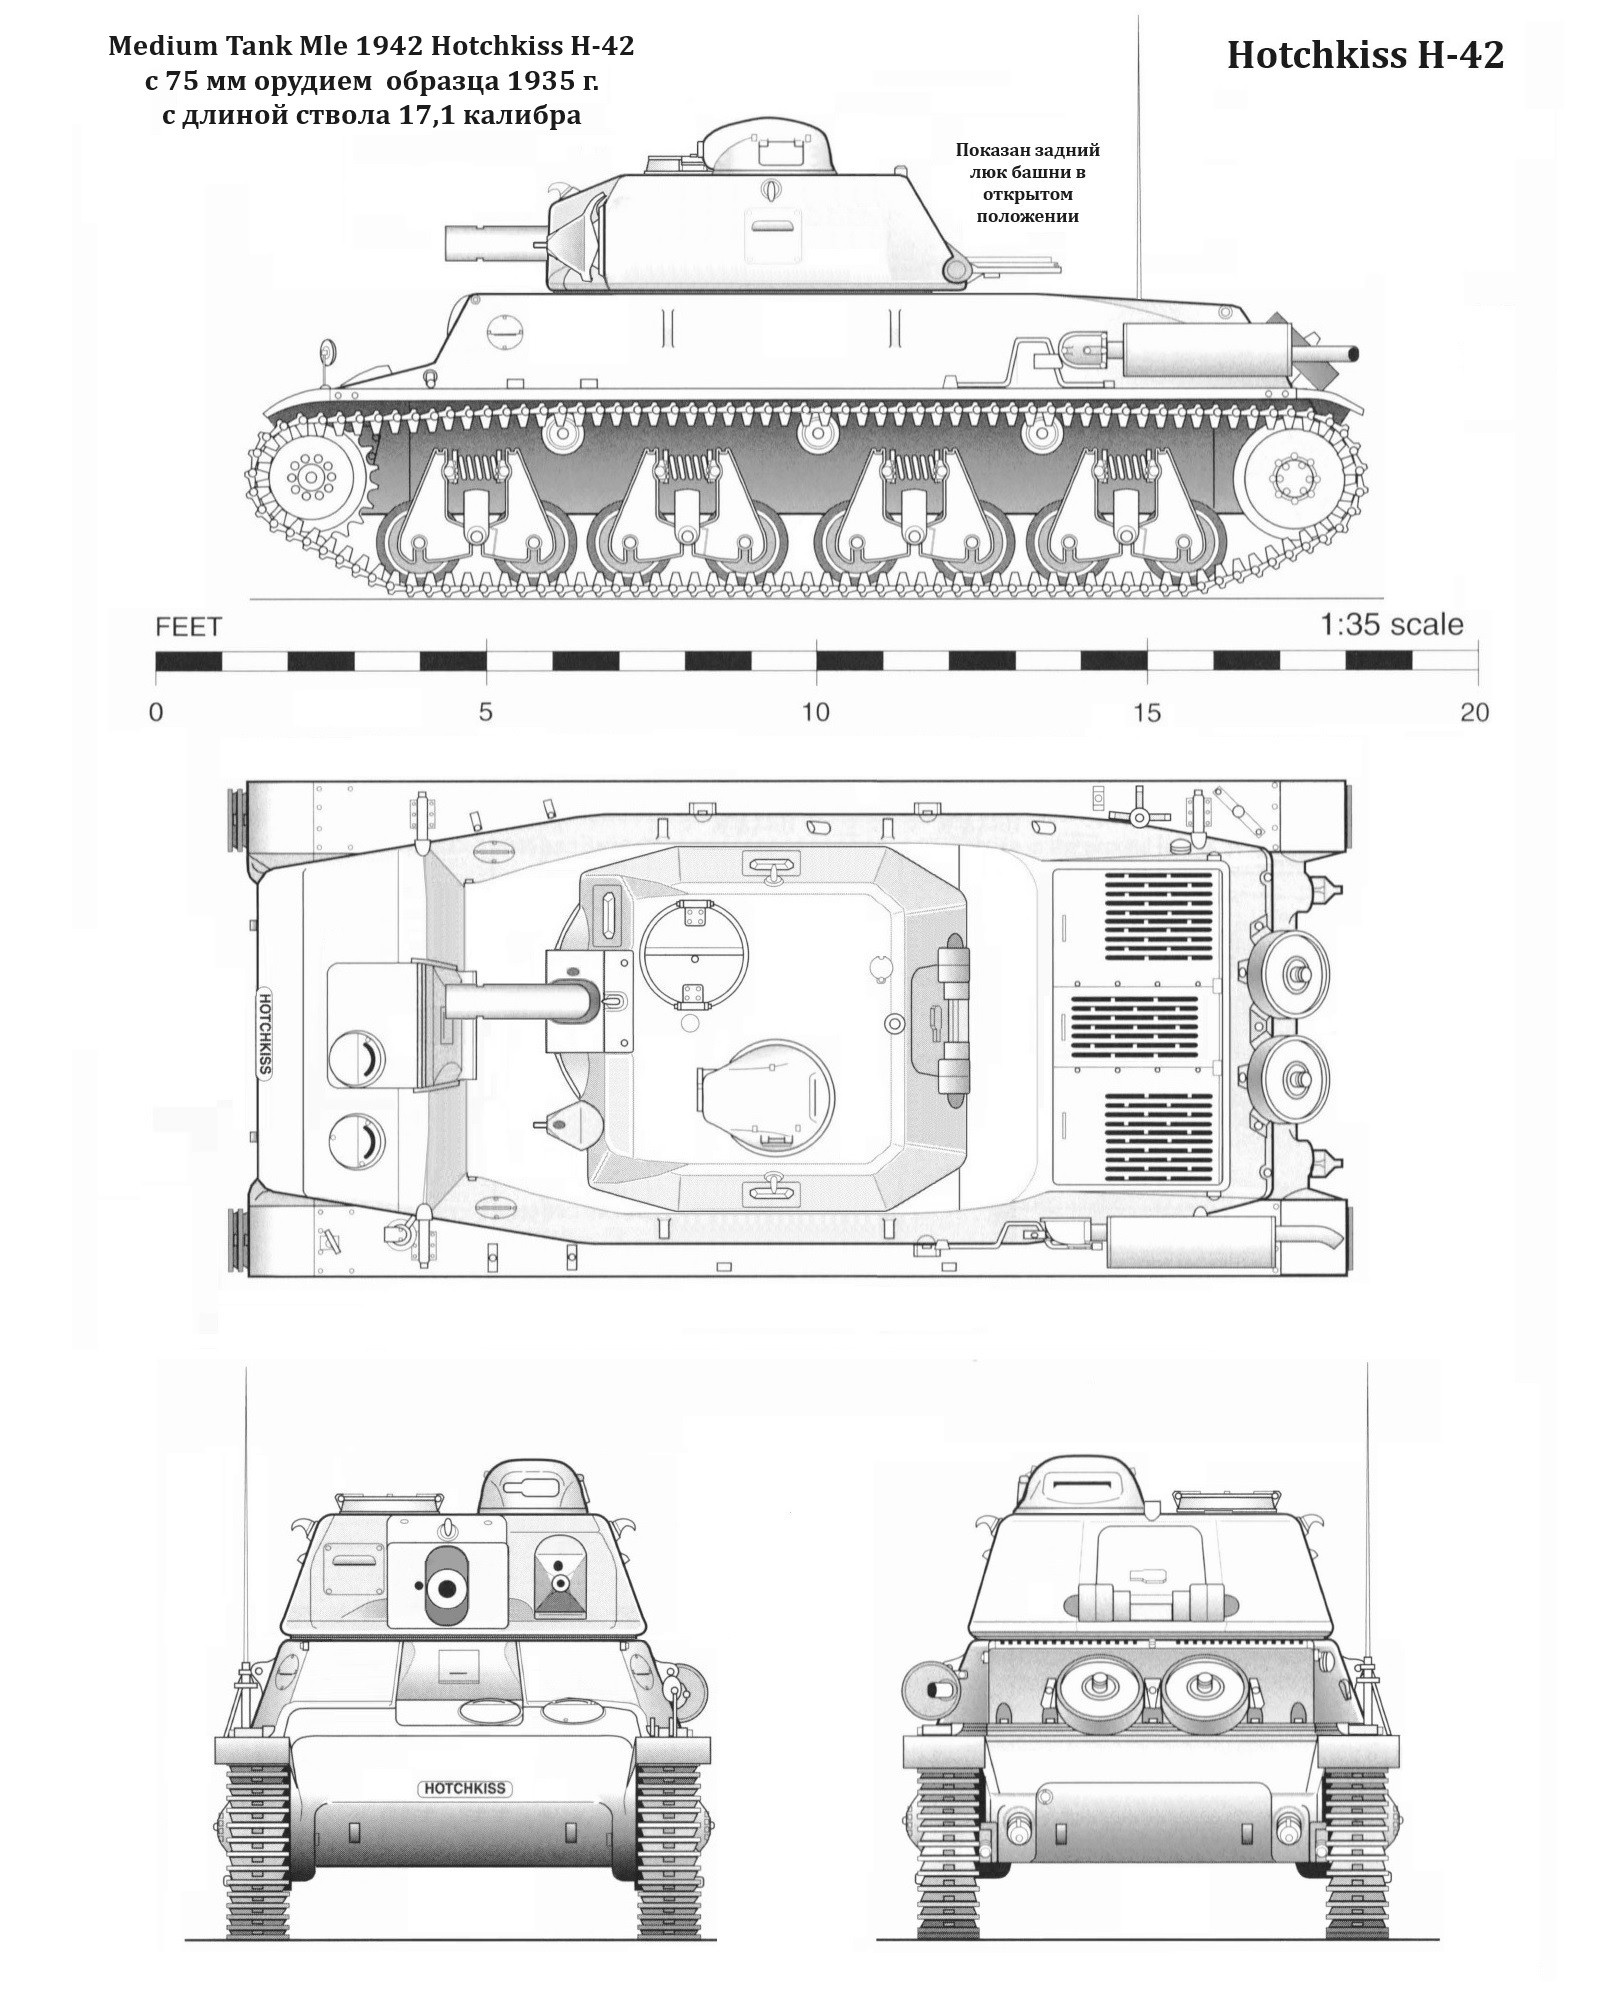 Если бы Франция продержалась бы до 1942 года. Альтернативный танк Гочкисс Х35 (Hotchkiss H35)